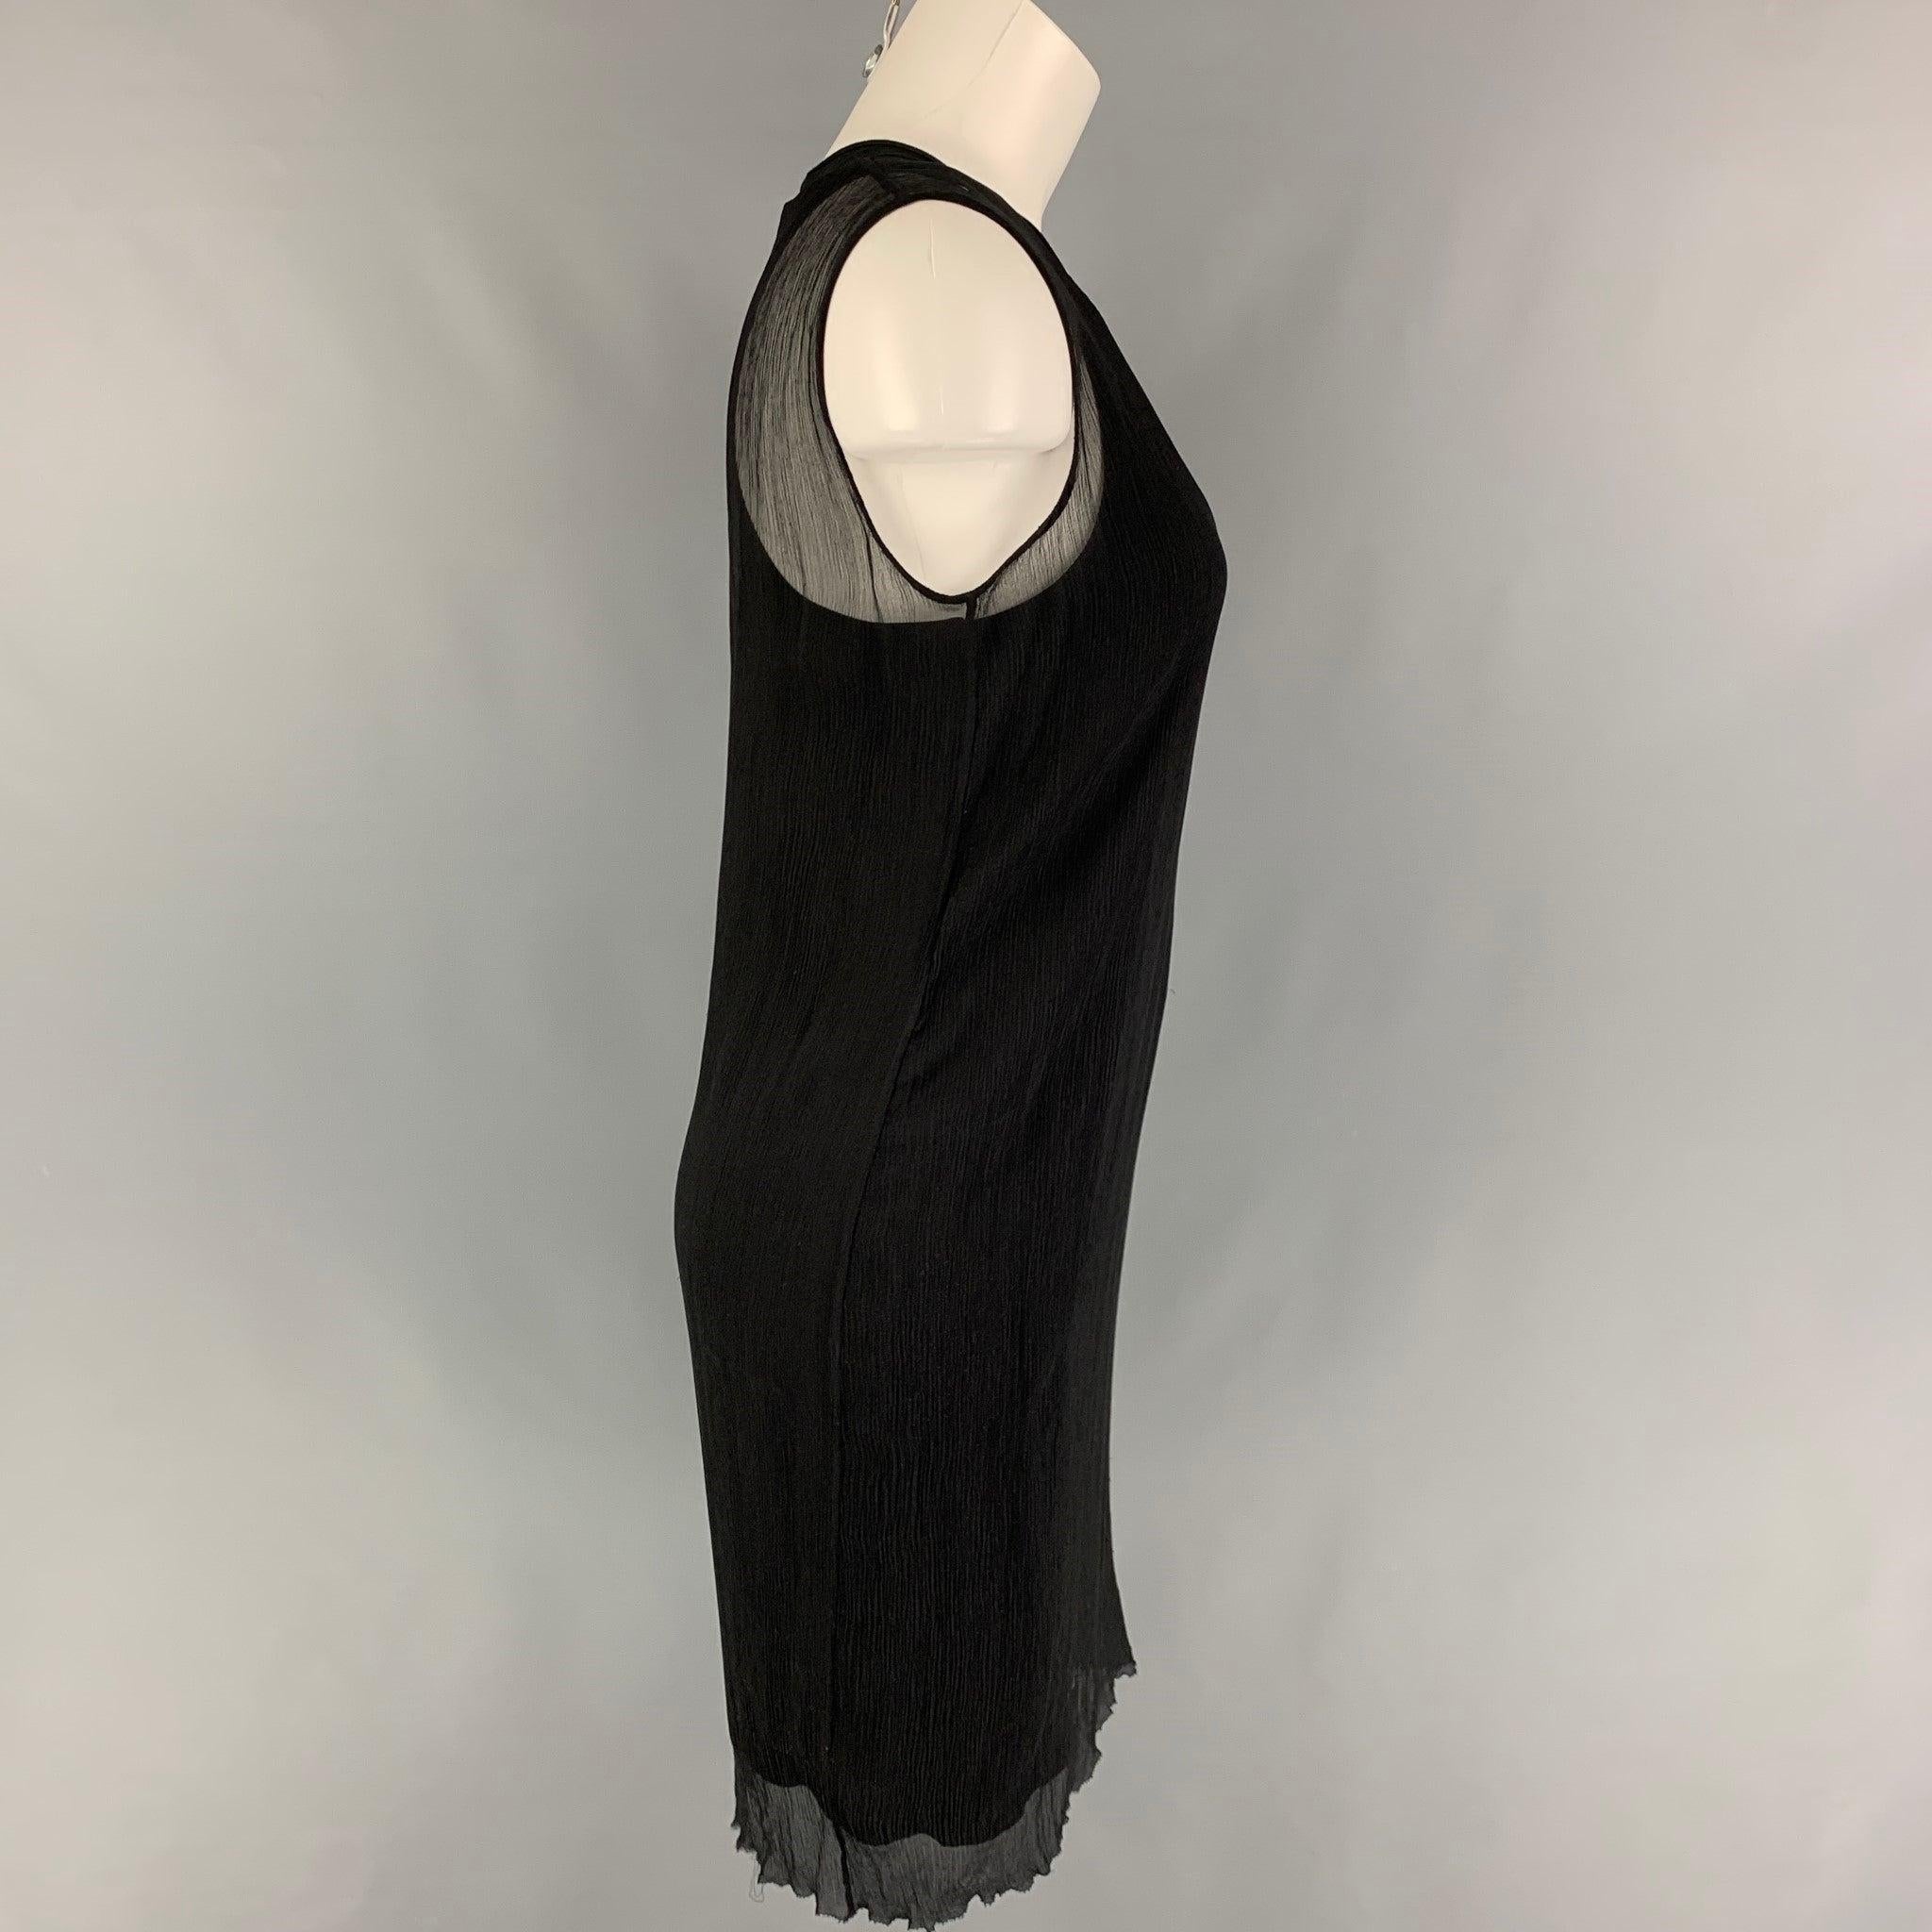 Das Kleid von PORTS 1961 besteht aus schwarzer, geknitterter Viskose, ist doppellagig geschnitten und hat keine Ärmel.
Sehr gut
Gebrauchtes Zustand. 

Markiert:   4 

Abmessungen: 
 
Schultern: 14 Zoll  Oberweite: 32 Zoll  Hüfte: 36 Zoll  Länge: 37